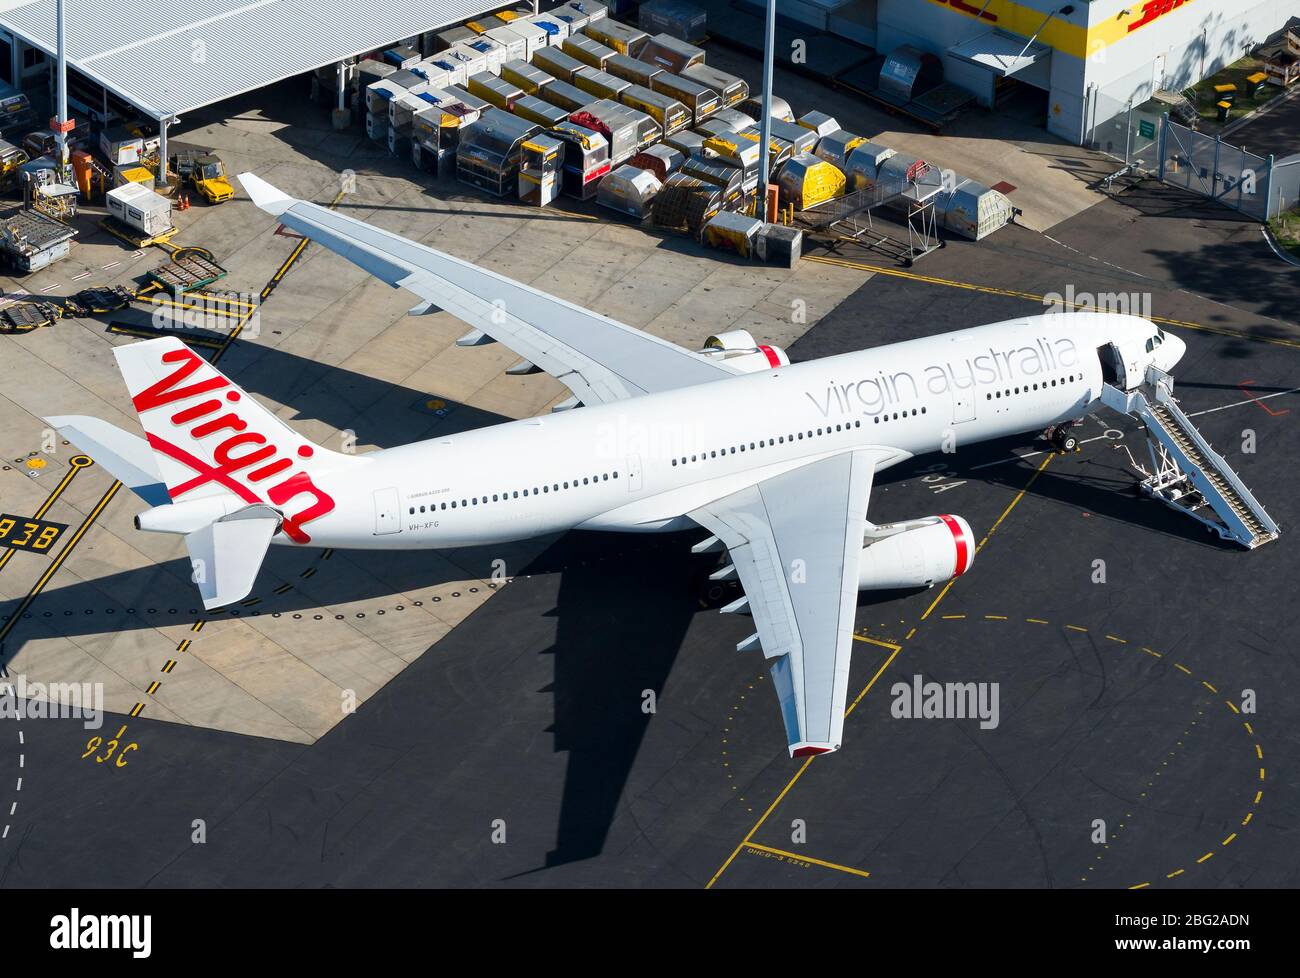 Virgin Australia Airlines Airbus A330 VH-XFG parkt am Flughafen Sydney. Fluggesellschaft, die in Krisenzeiten freiwillig in die Verwaltung eingeht. Stockfoto